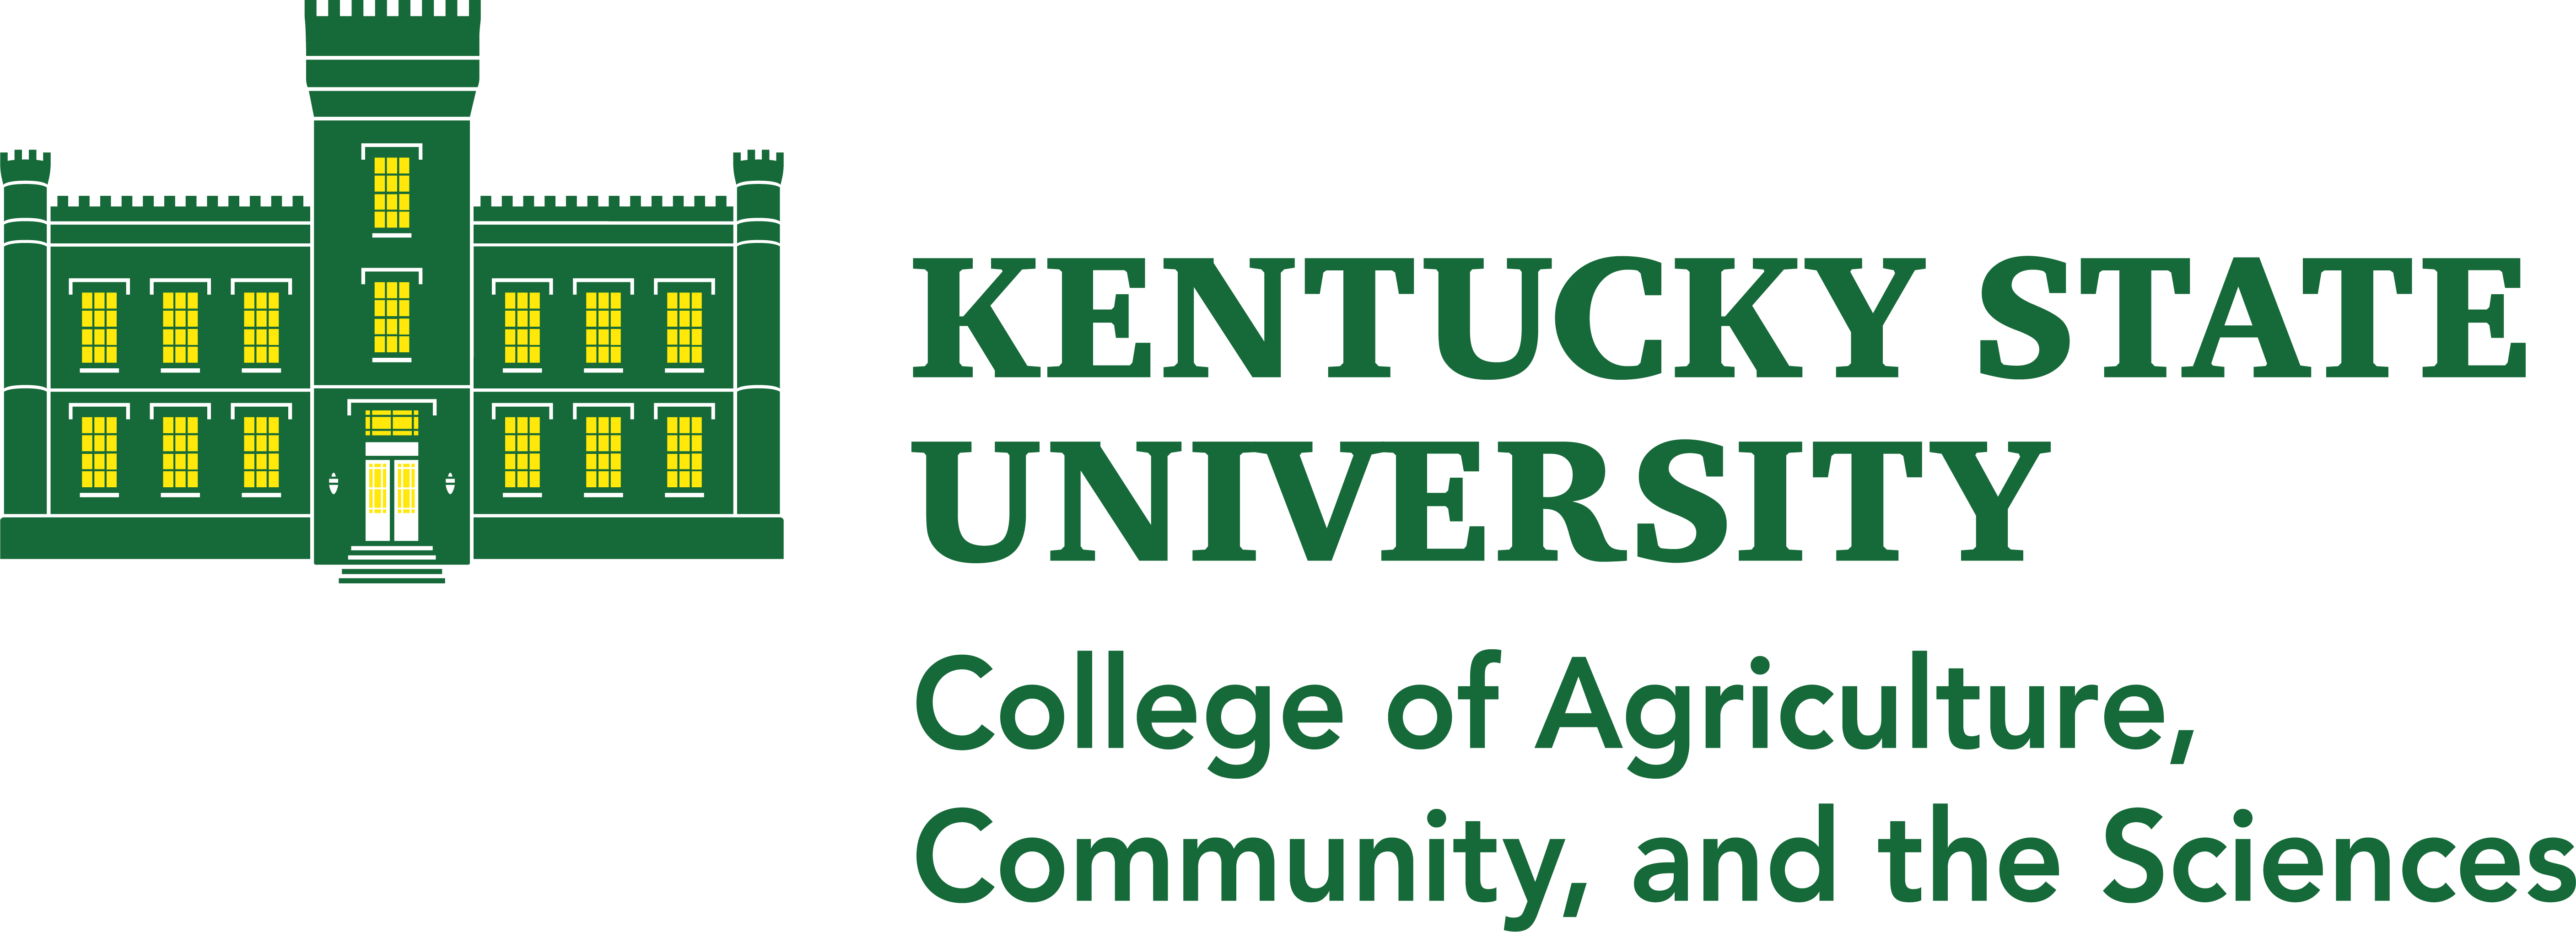 Kentucky State University lockup